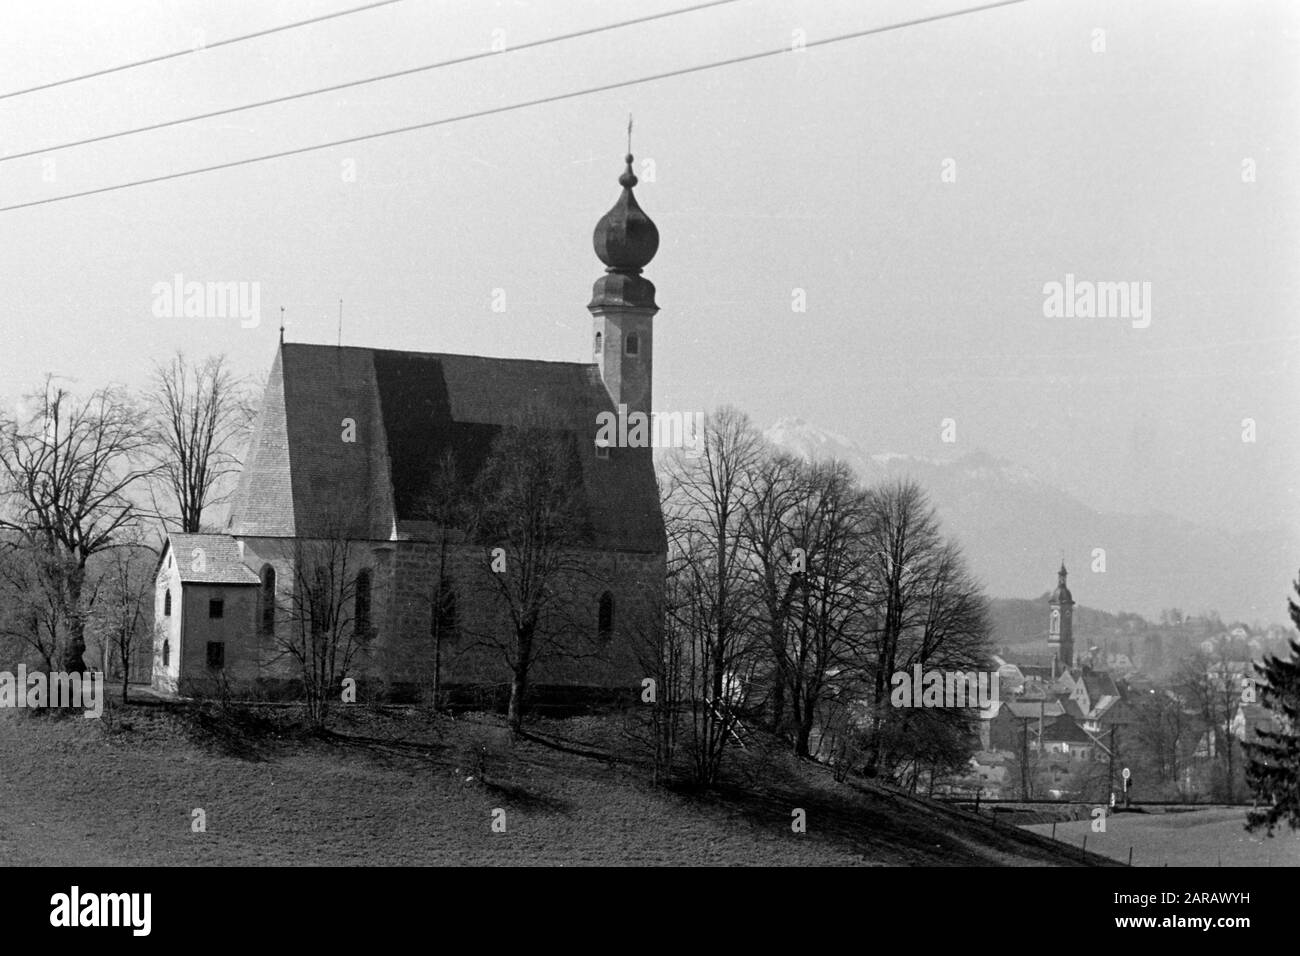 Das Ettendorfer Kircherl, St. Vitus und Anna. Blick auf Traunstein, 1957. Ettendorf church, St. Vitus and Anna. View of Traunstein, 1957. Stock Photo